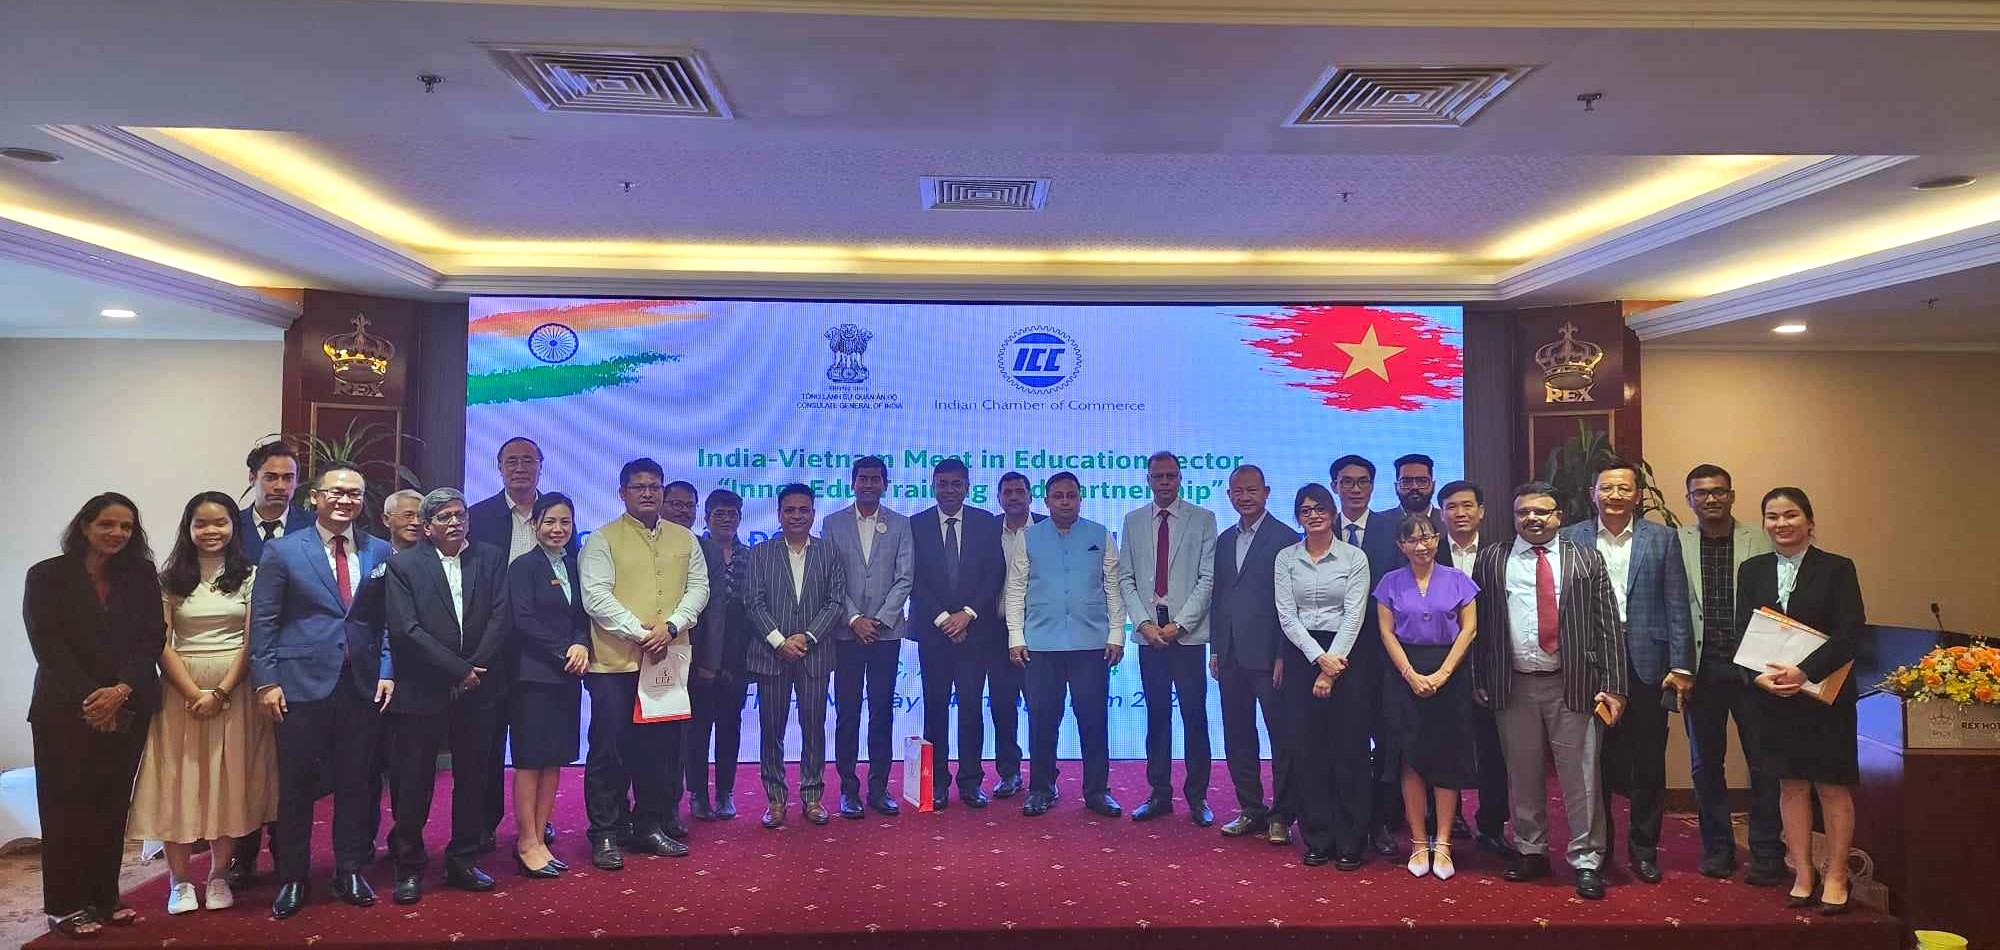 Tổng Lãnh sự Ấn Độ tại TPHCM, ông Madan Mohan Sethi chụp ảnh lưu niệm cùng đại diện các trường đại học, học viện và doanh nghiệp công nghệ cao từ Ấn Độ và Việt Nam tham dự buổi giao lưu